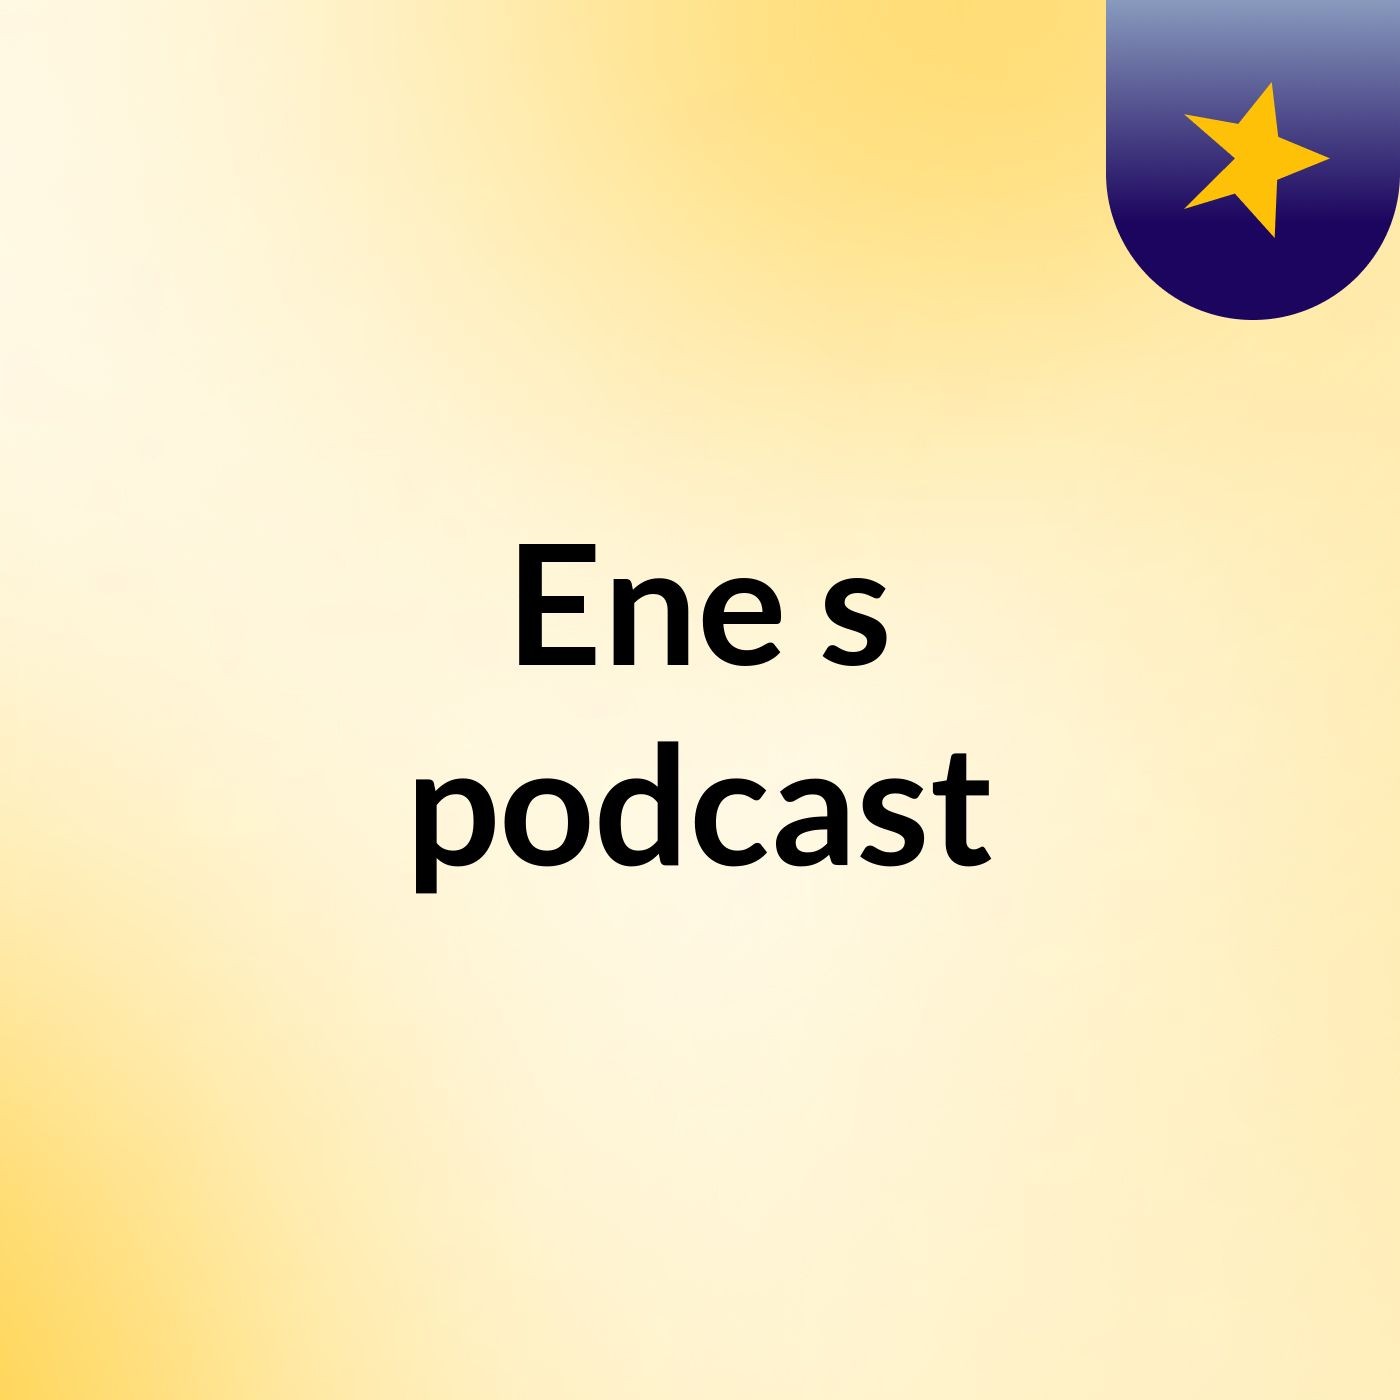 Ene's podcast